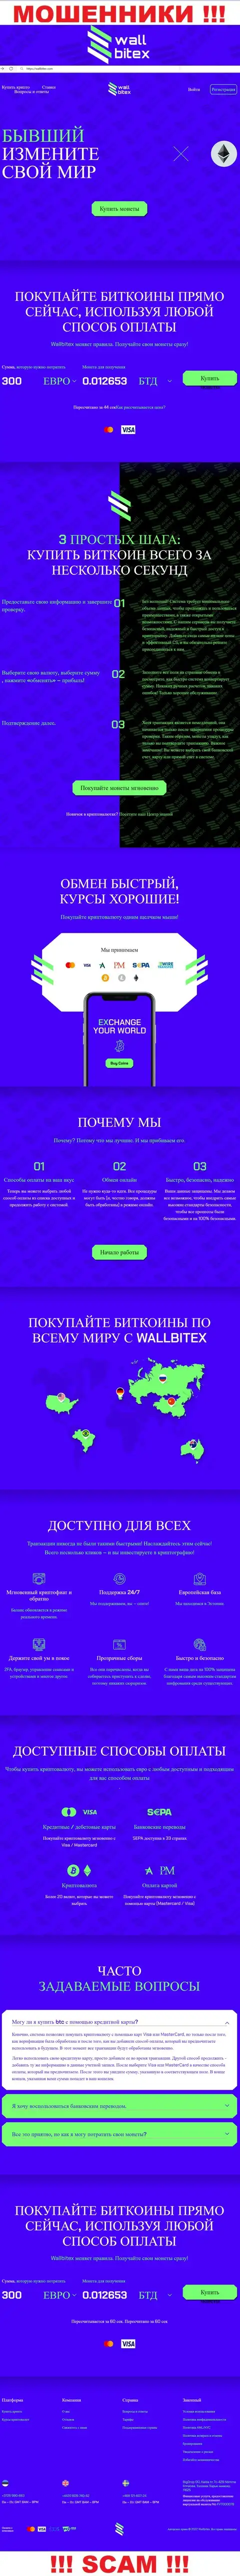 WallBitex Com - это интернет-ресурс незаконно действующей компании WallBitex